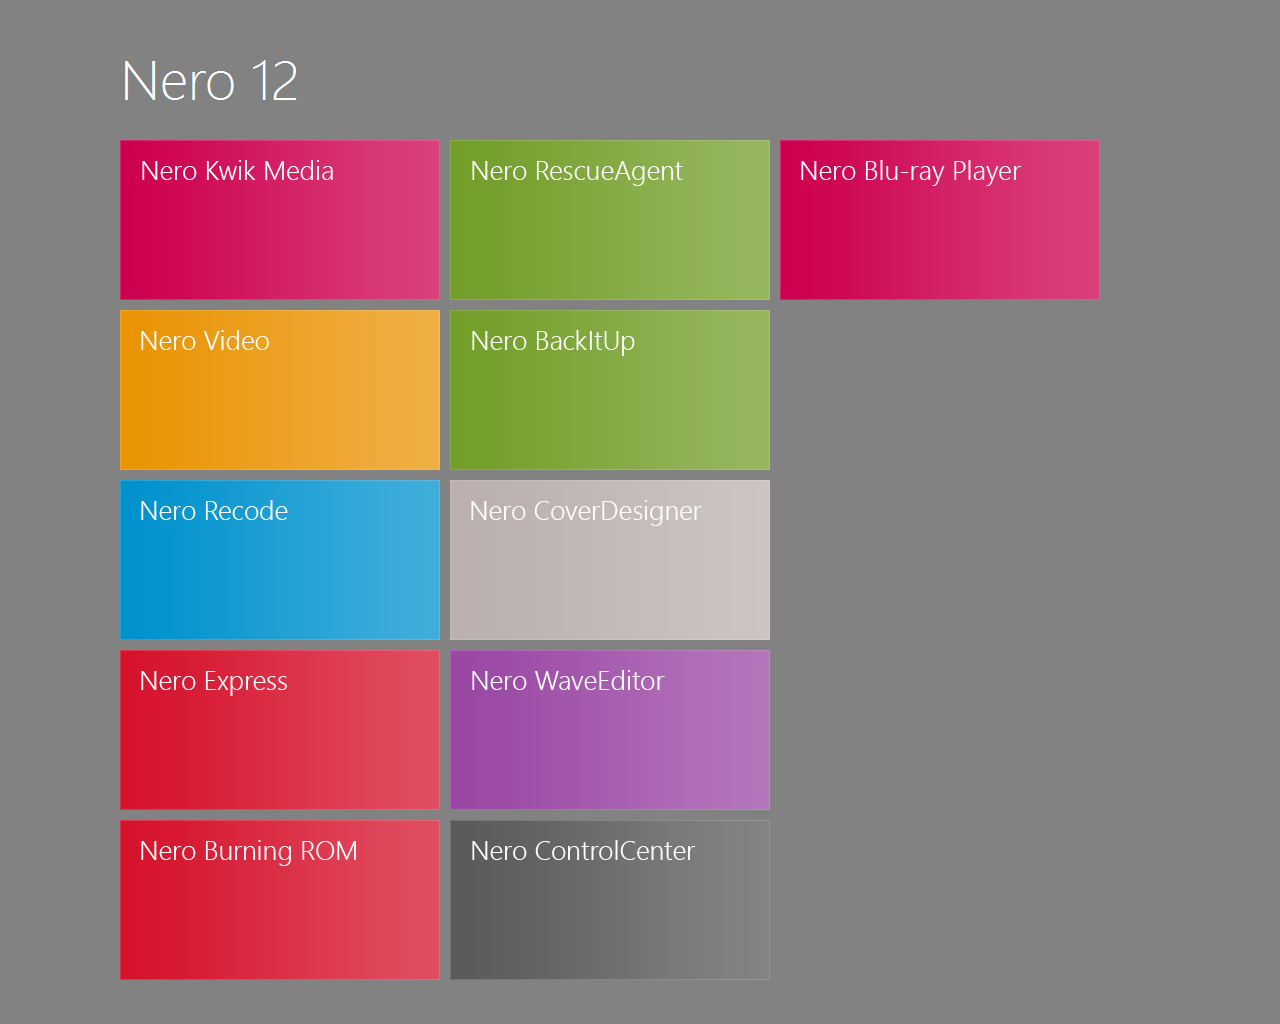 Nero 2014 15.0.03500 Full RePack